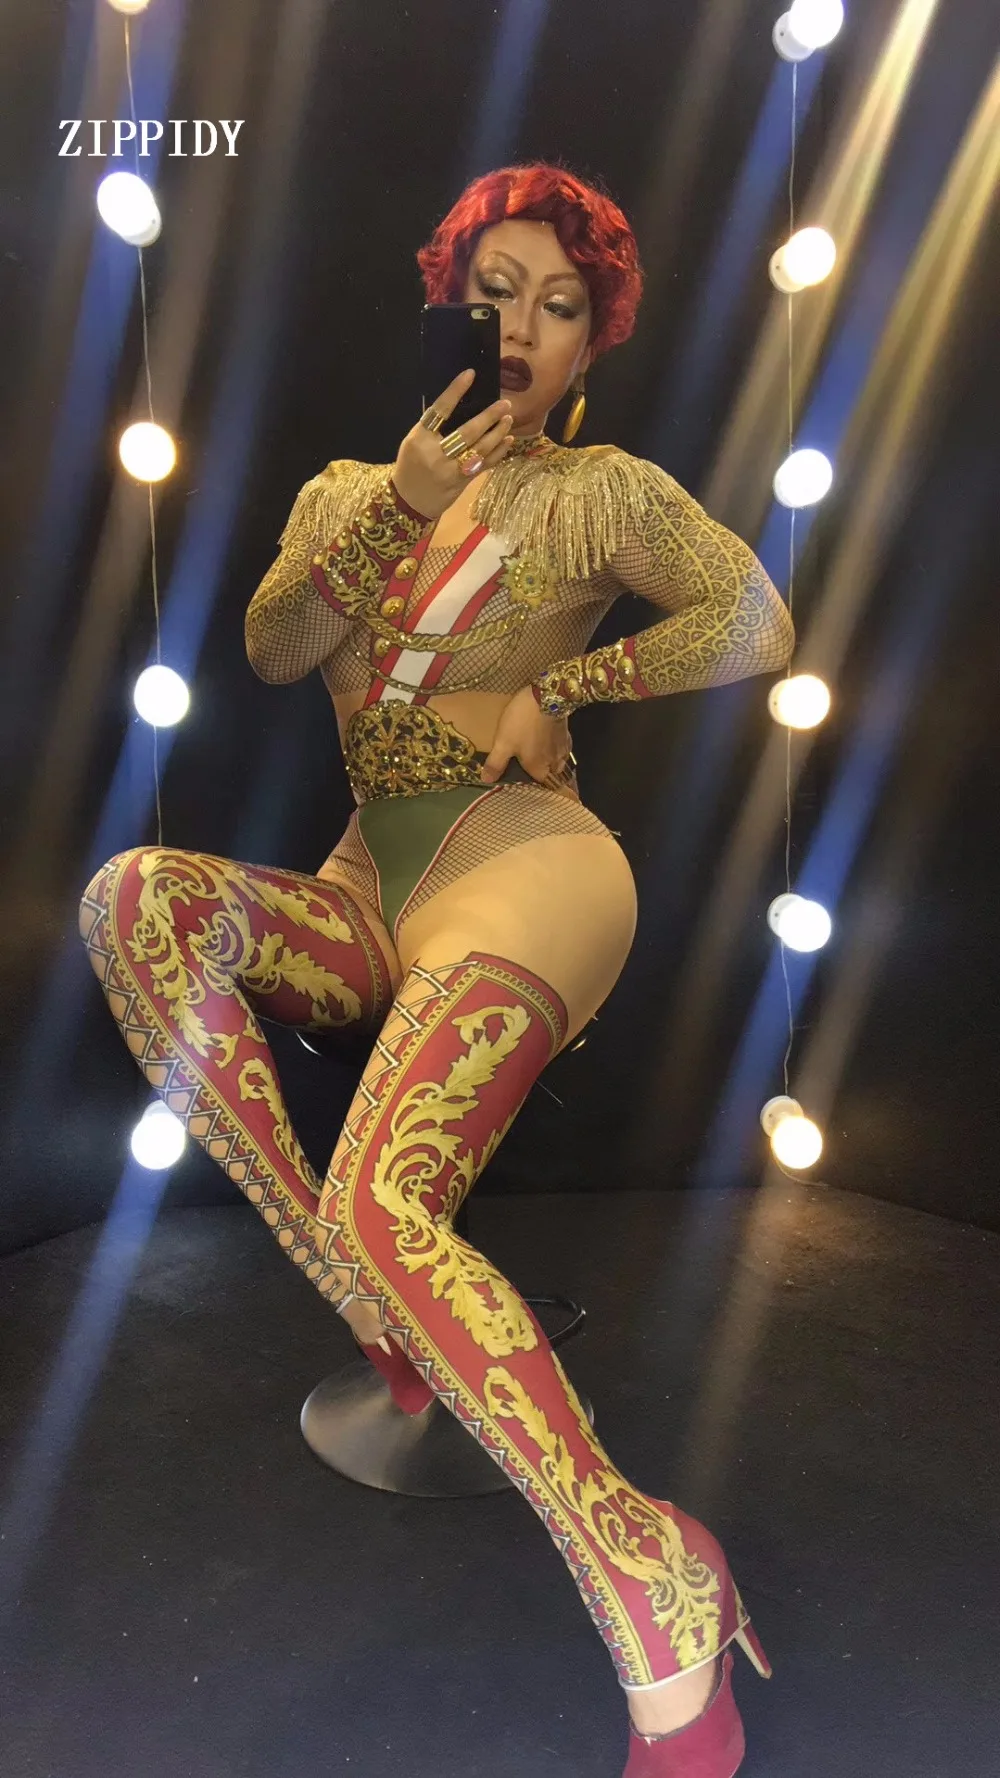 Военная форма сексуальное боди цельный костюм певица этап одежда кисточкой Epalates комбинезон Одежда для танцев вечерние Стретч Обнаженная наряд